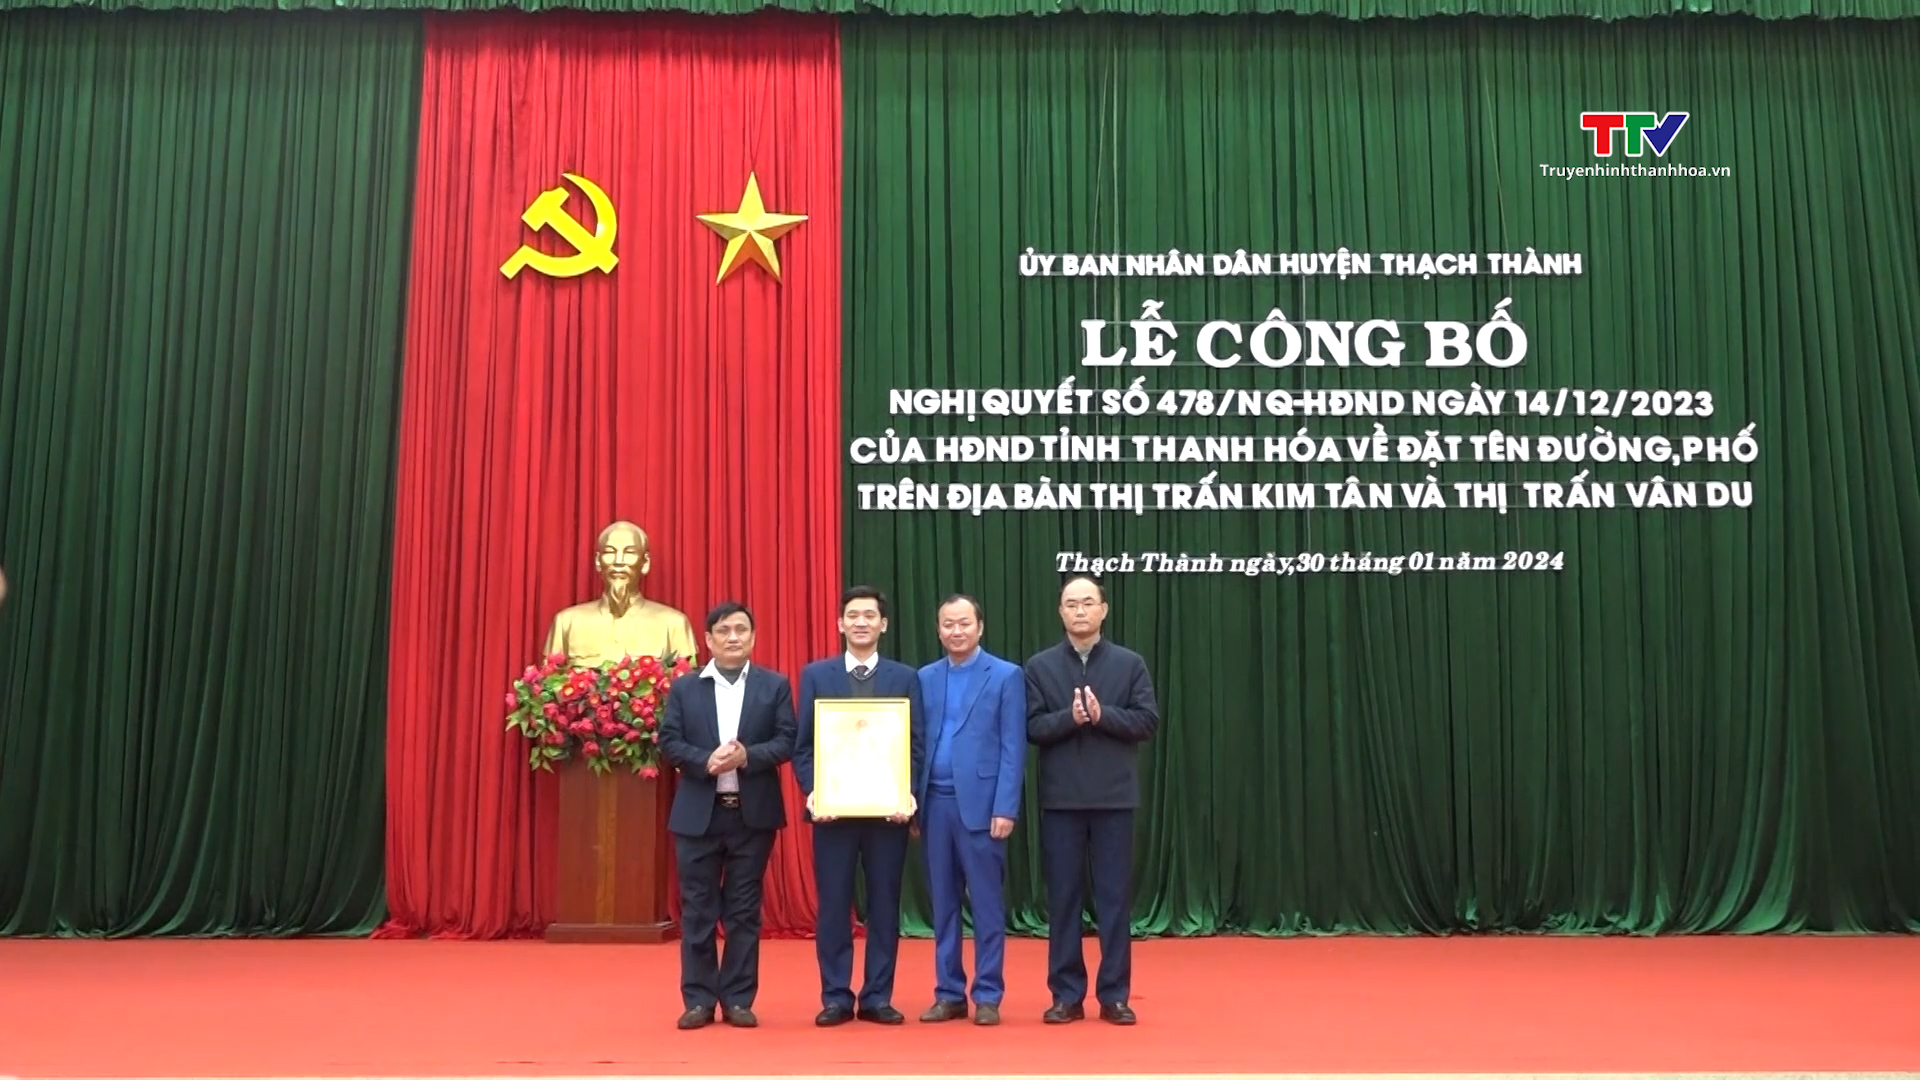 Huyện Thạch Thành công bố Nghị quyết của Hội đồng Nhân dân tỉnh về việc đặt tên đường, phố trên địa bàn thị trấn Kim Tân và Vân Du- Ảnh 1.